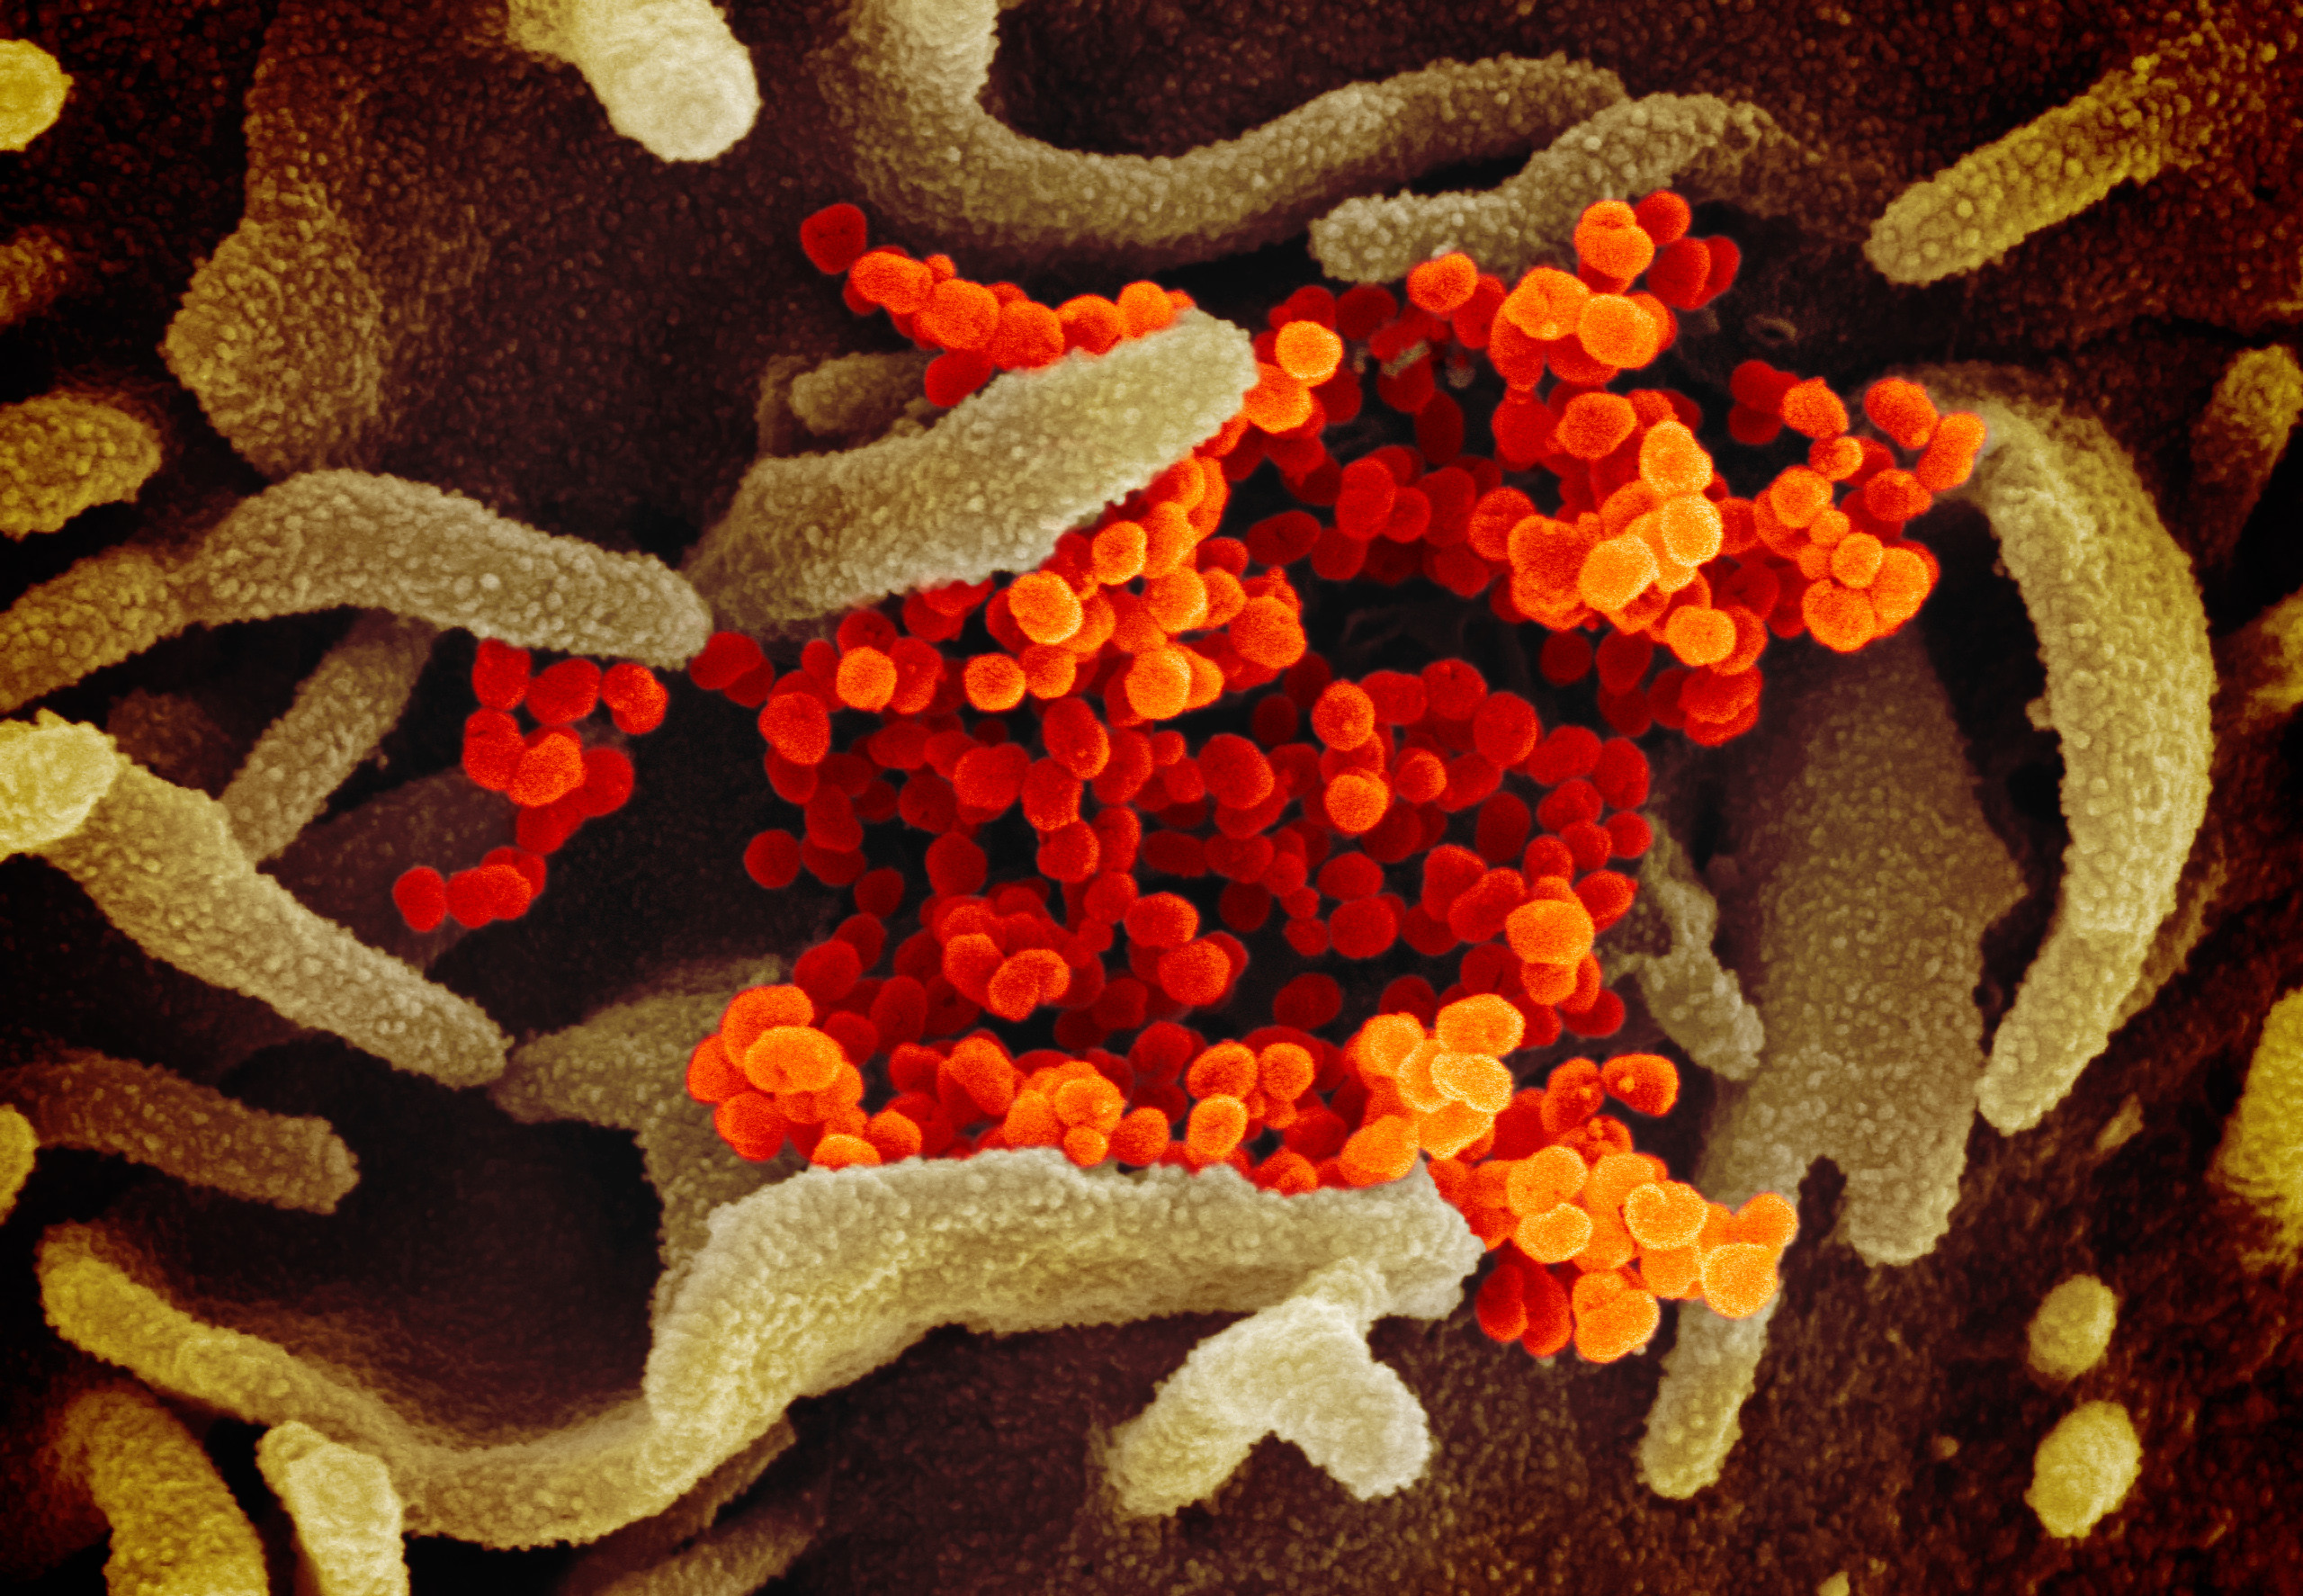 Le virus Sars-CoV-2 du Covid-19 vu au microscope électronique. Le virus apparaît en orange, en train de coloniser la surface des cellules (en vert). Les modèles tels que celui présenté par Visual Science permettent aux scientifiques de faire avancer leur compréhension du mode d’action du coronavirus. Pour le grand public, ils donnent du corps à cet ennemi par ailleurs invisible. © Niaid-RML